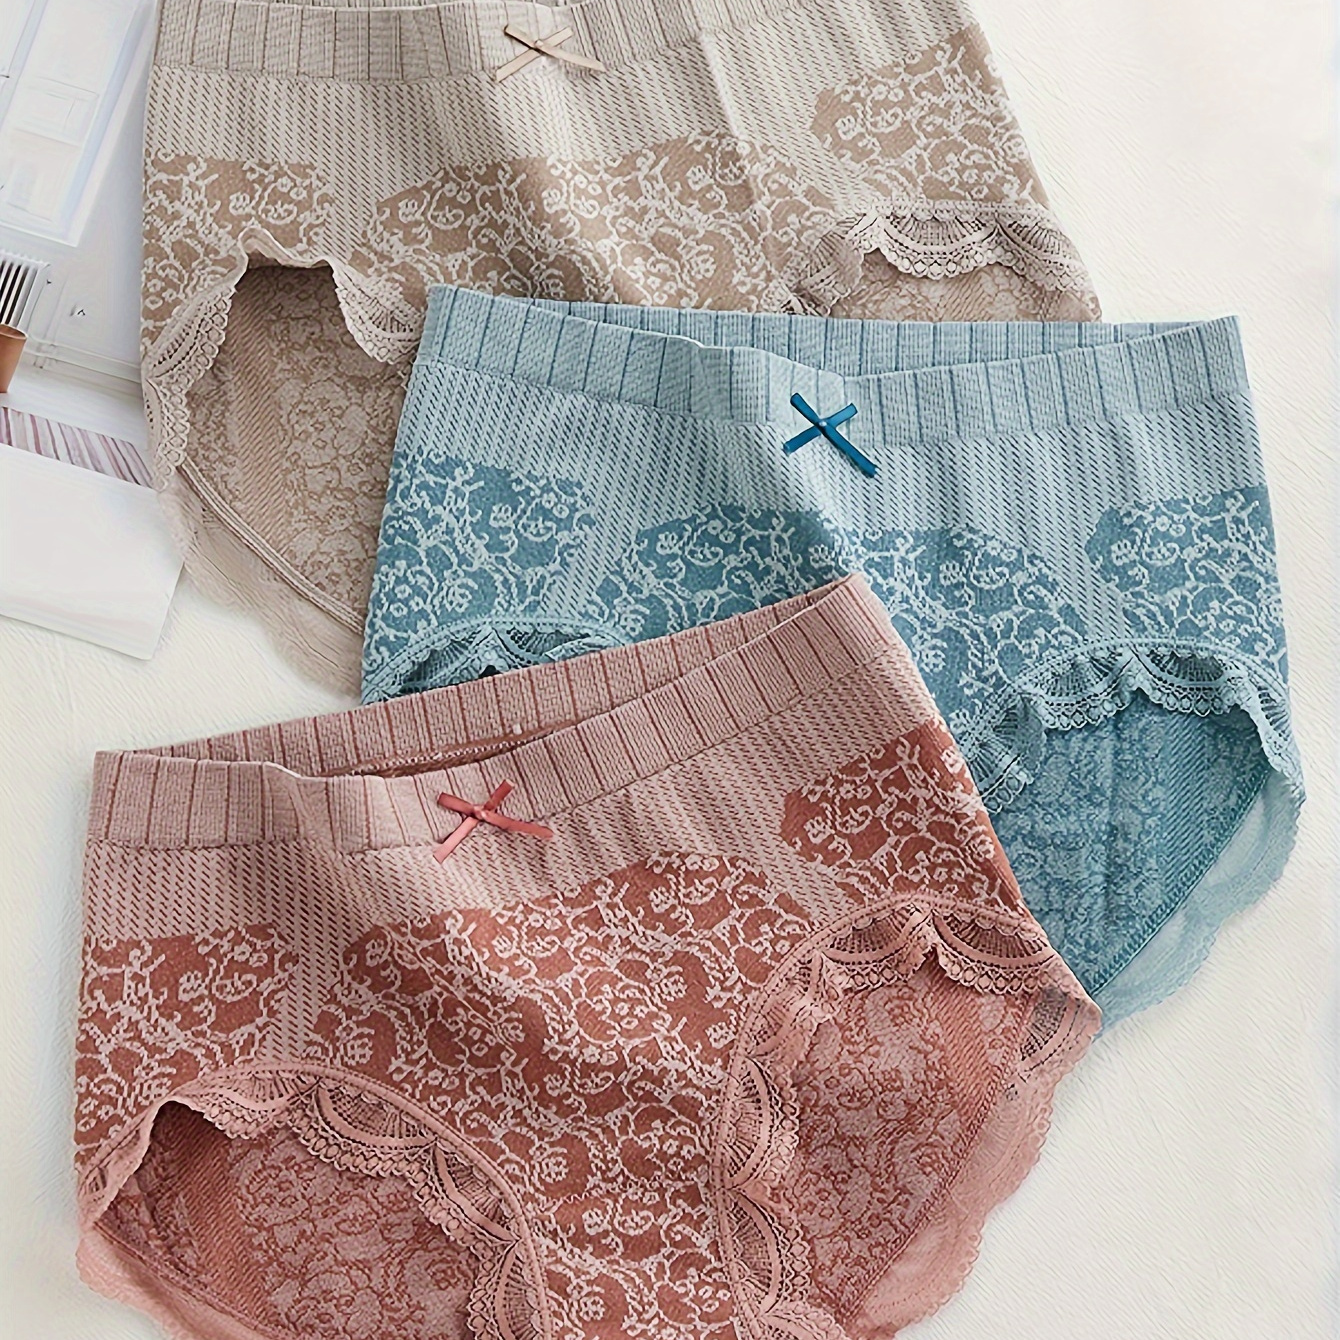 

3pcs Colorblock Floral Print Lace Trim Bow Briefs, Comfy Breathable Stretchy Intimates Panties, Women's Lingerie & Underwear